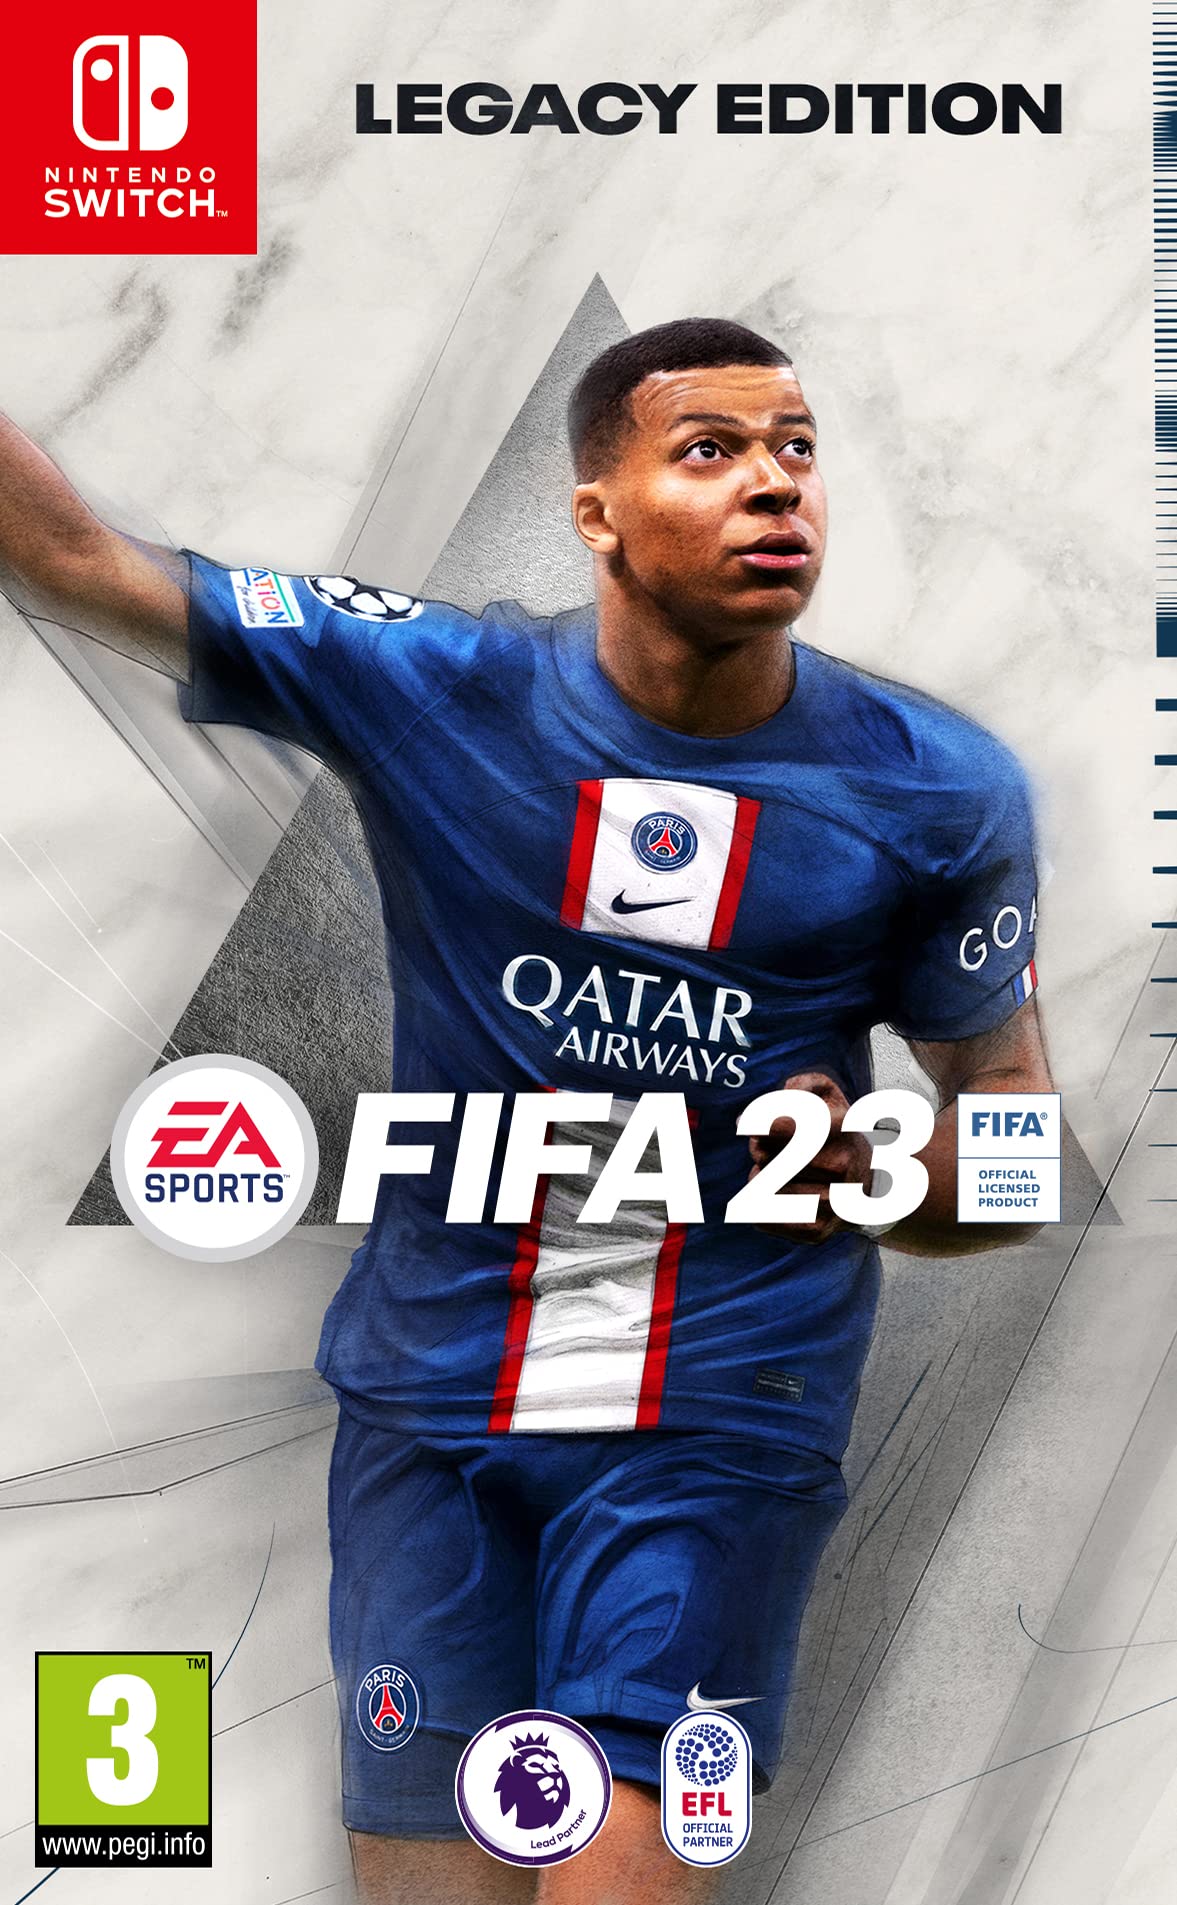 FIFA 23 game update screen